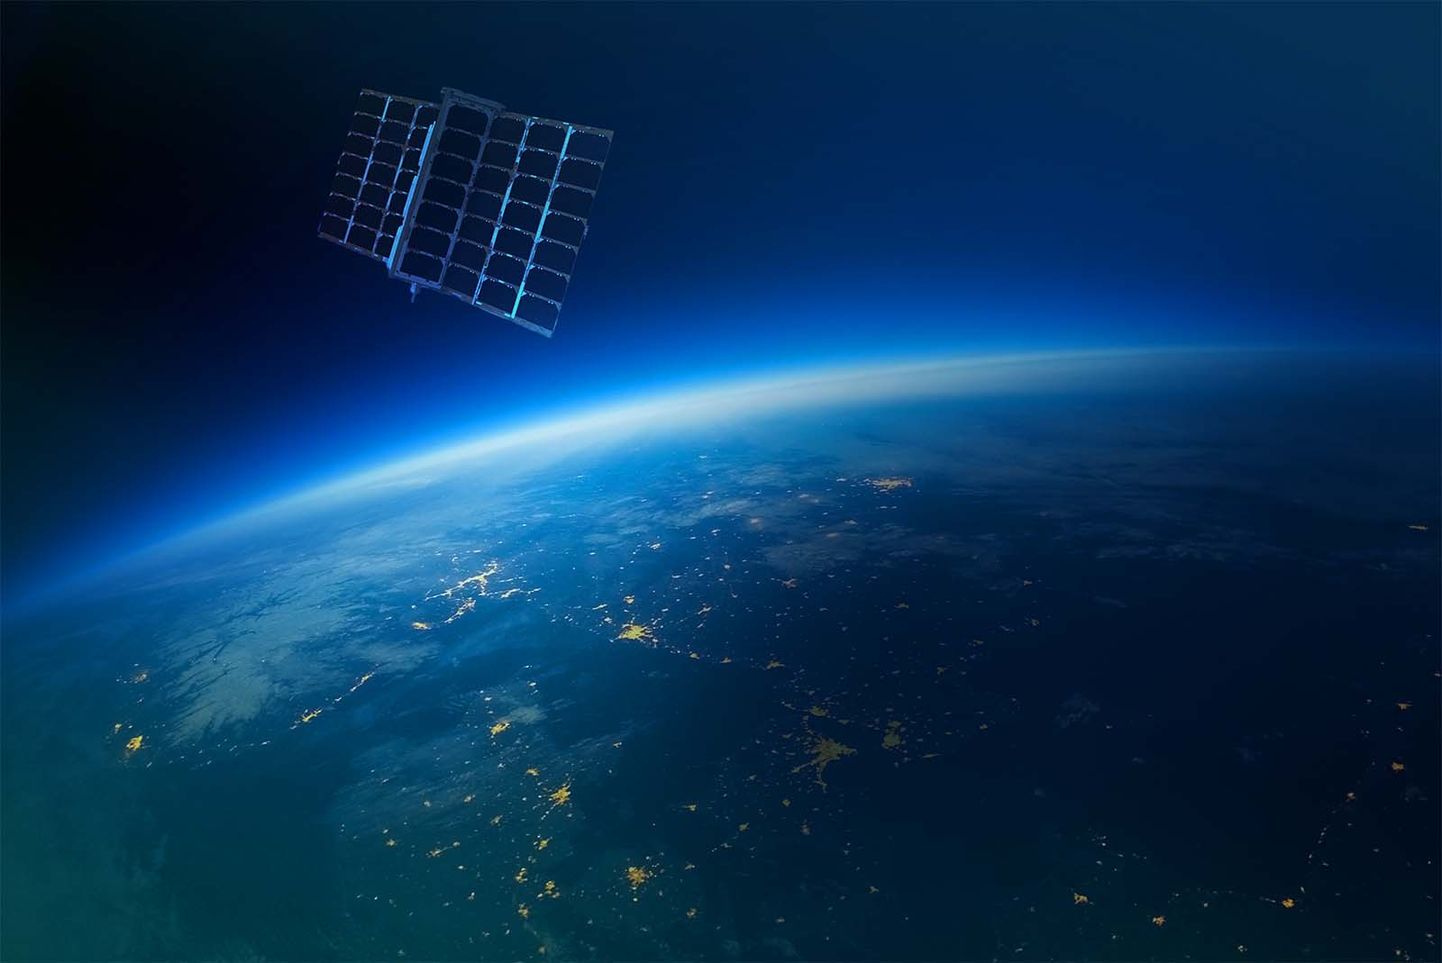 Spire kasutab kosmoseteenuste pakkumiseks madalal orbiidil asuvaid kuupsatelliite.